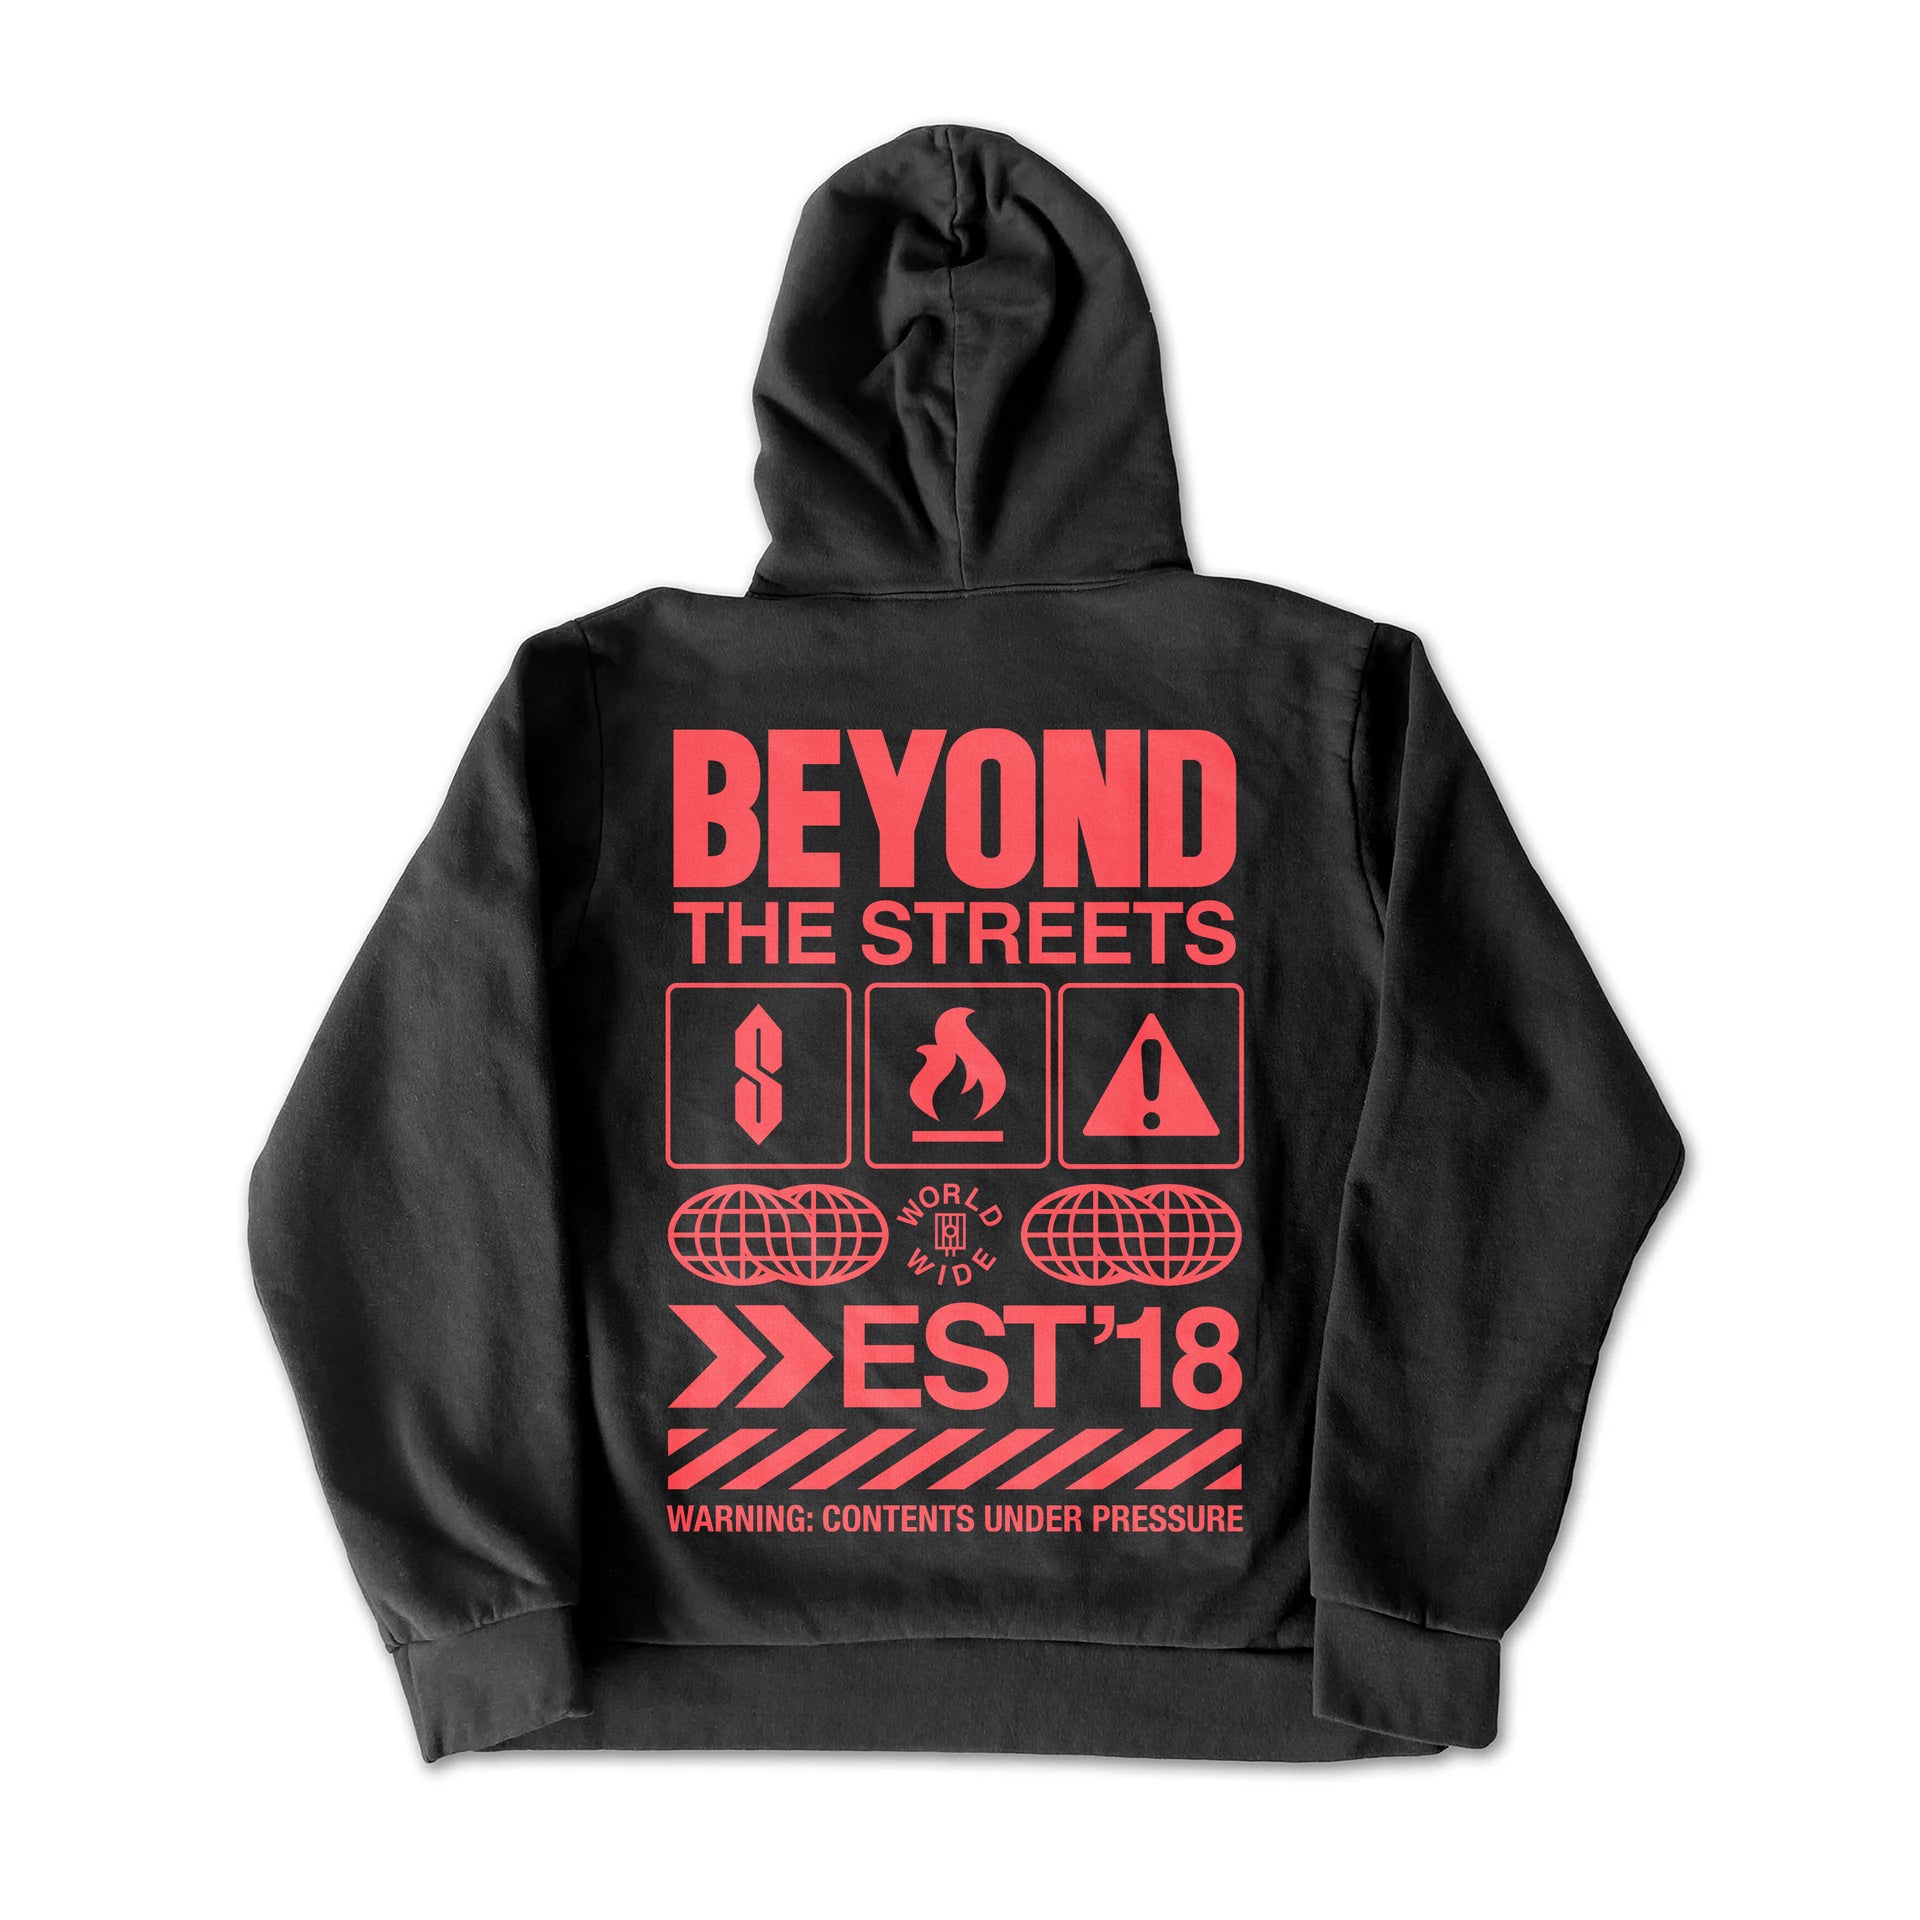 BEYOND THE STREETS "BEYOND" Hoodie